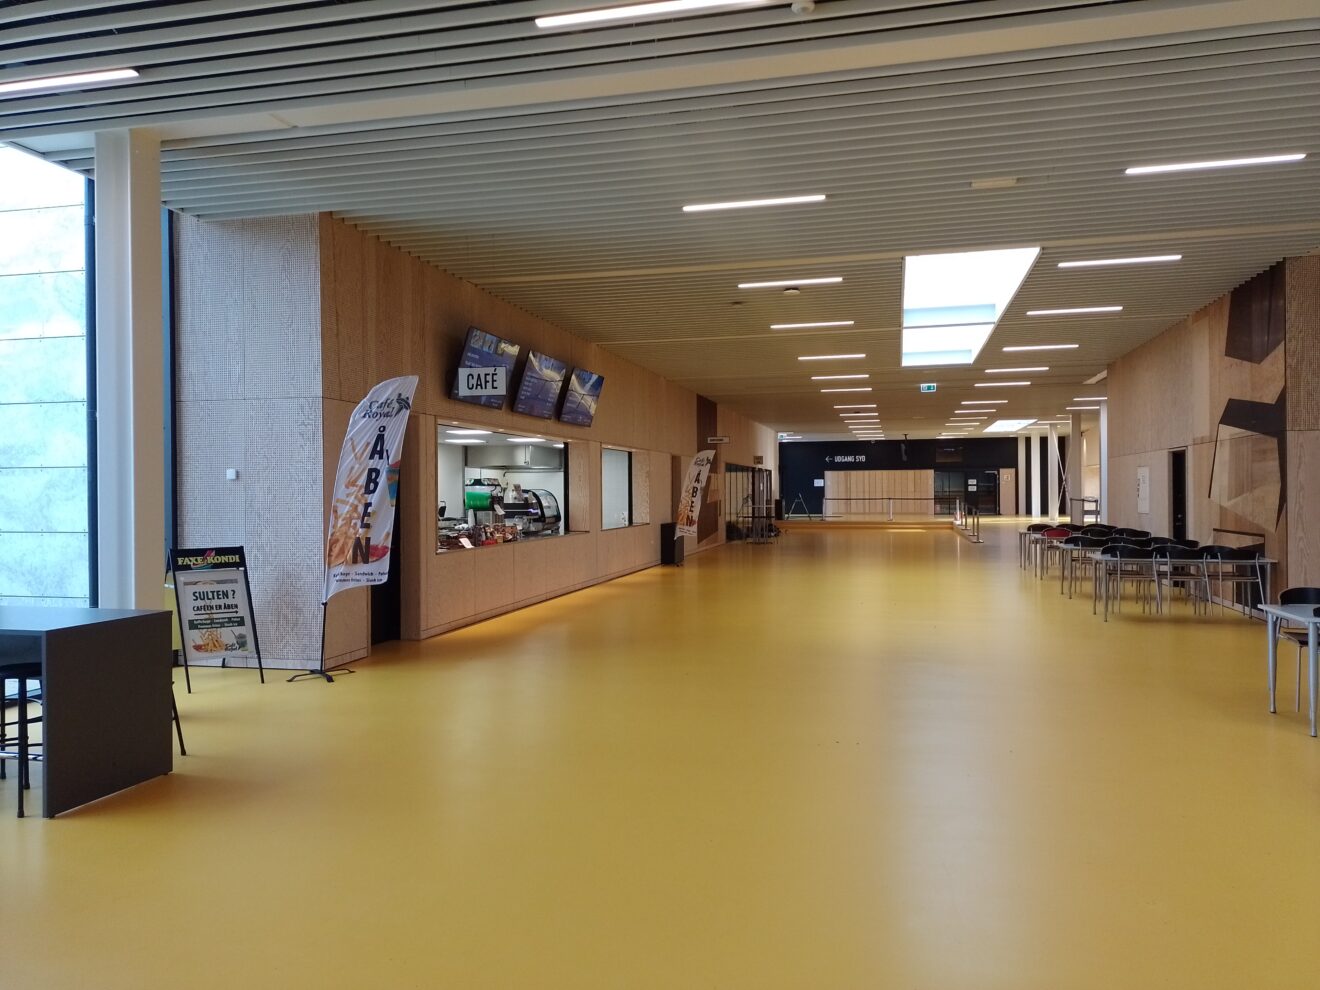 Udviklingshandicappede og professionelle kokke overtager ansvaret for stor café i Ringsted Sportscenter